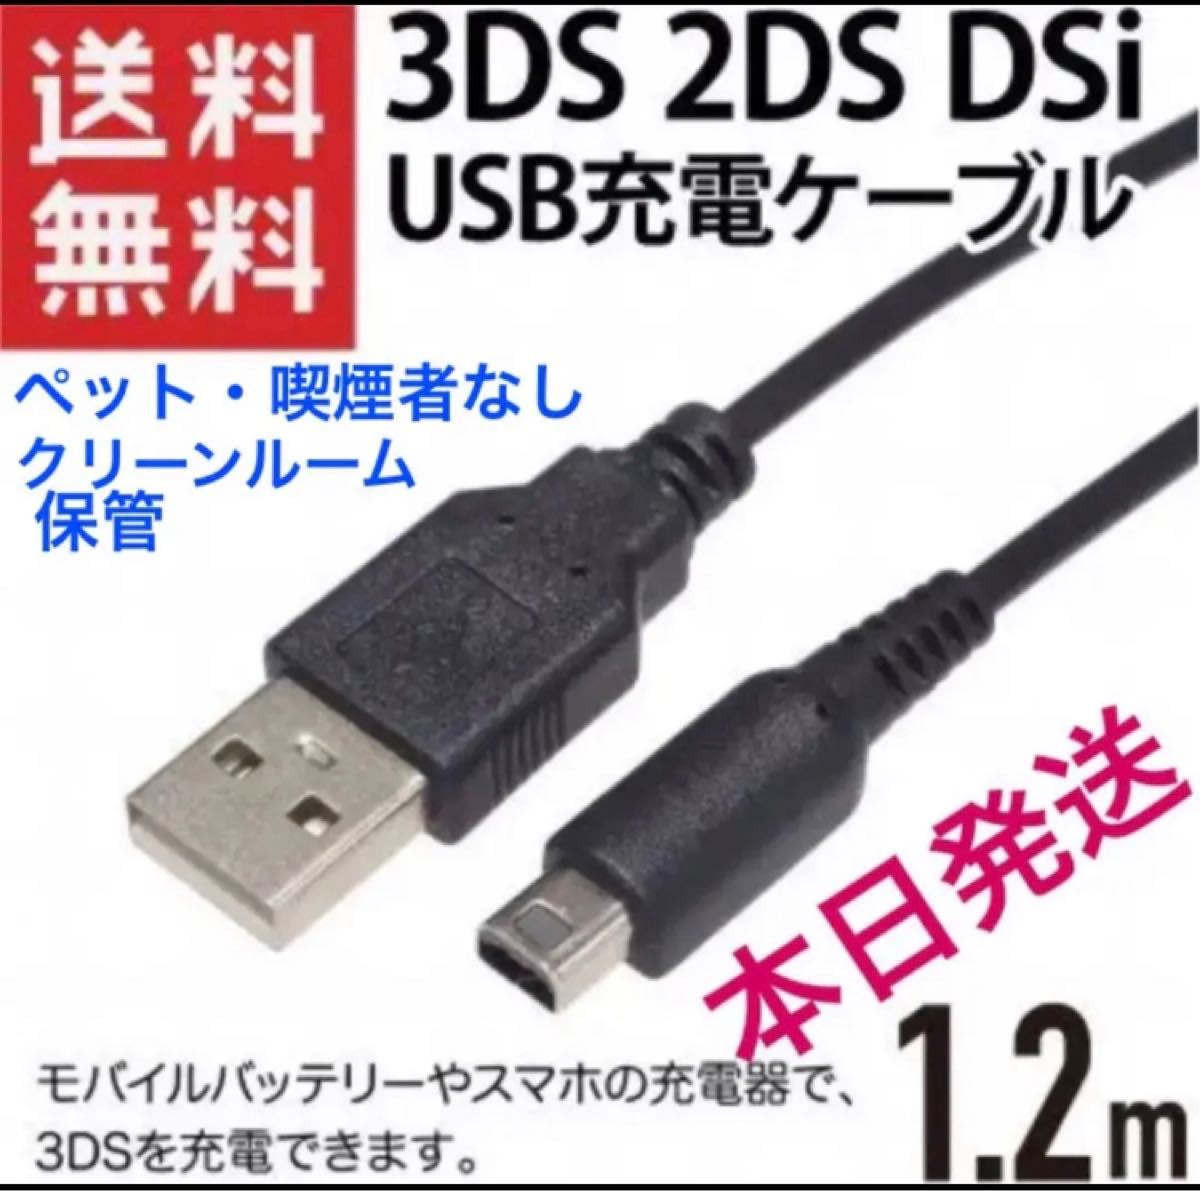 本日発送Nintendo 3DS2DS対応 充電器ケーブルydm